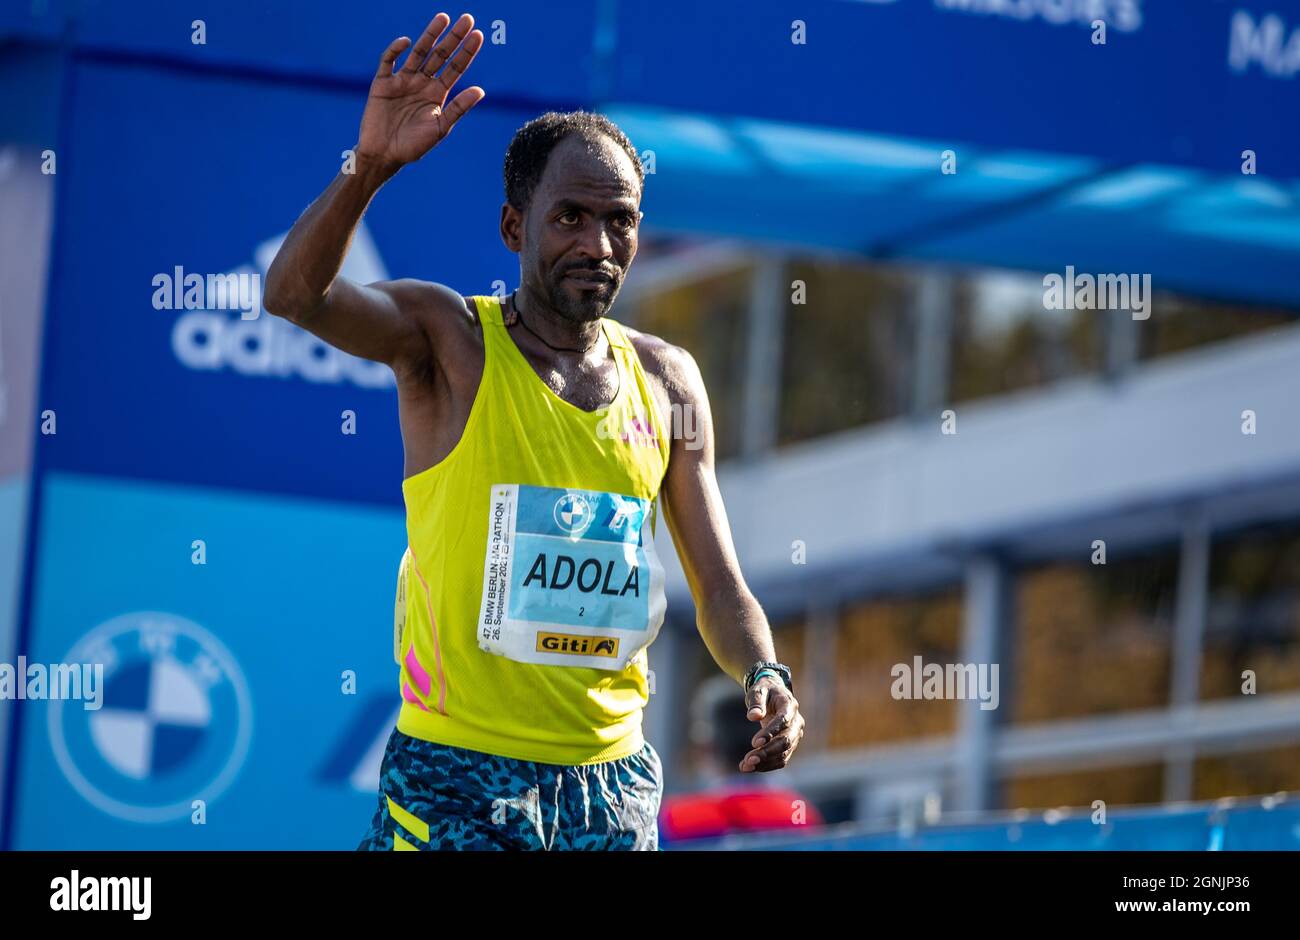 Berlino, Germania. 26 settembre 2021. Atletica: Maratona, decisione, uomini. Guye Adola, dall'Etiopia, supera il traguardo per primo nella maratona BMW di Berlino dopo le ore 2:05:45. Credit: Andreas Gora/dpa/Alamy Live News Foto Stock